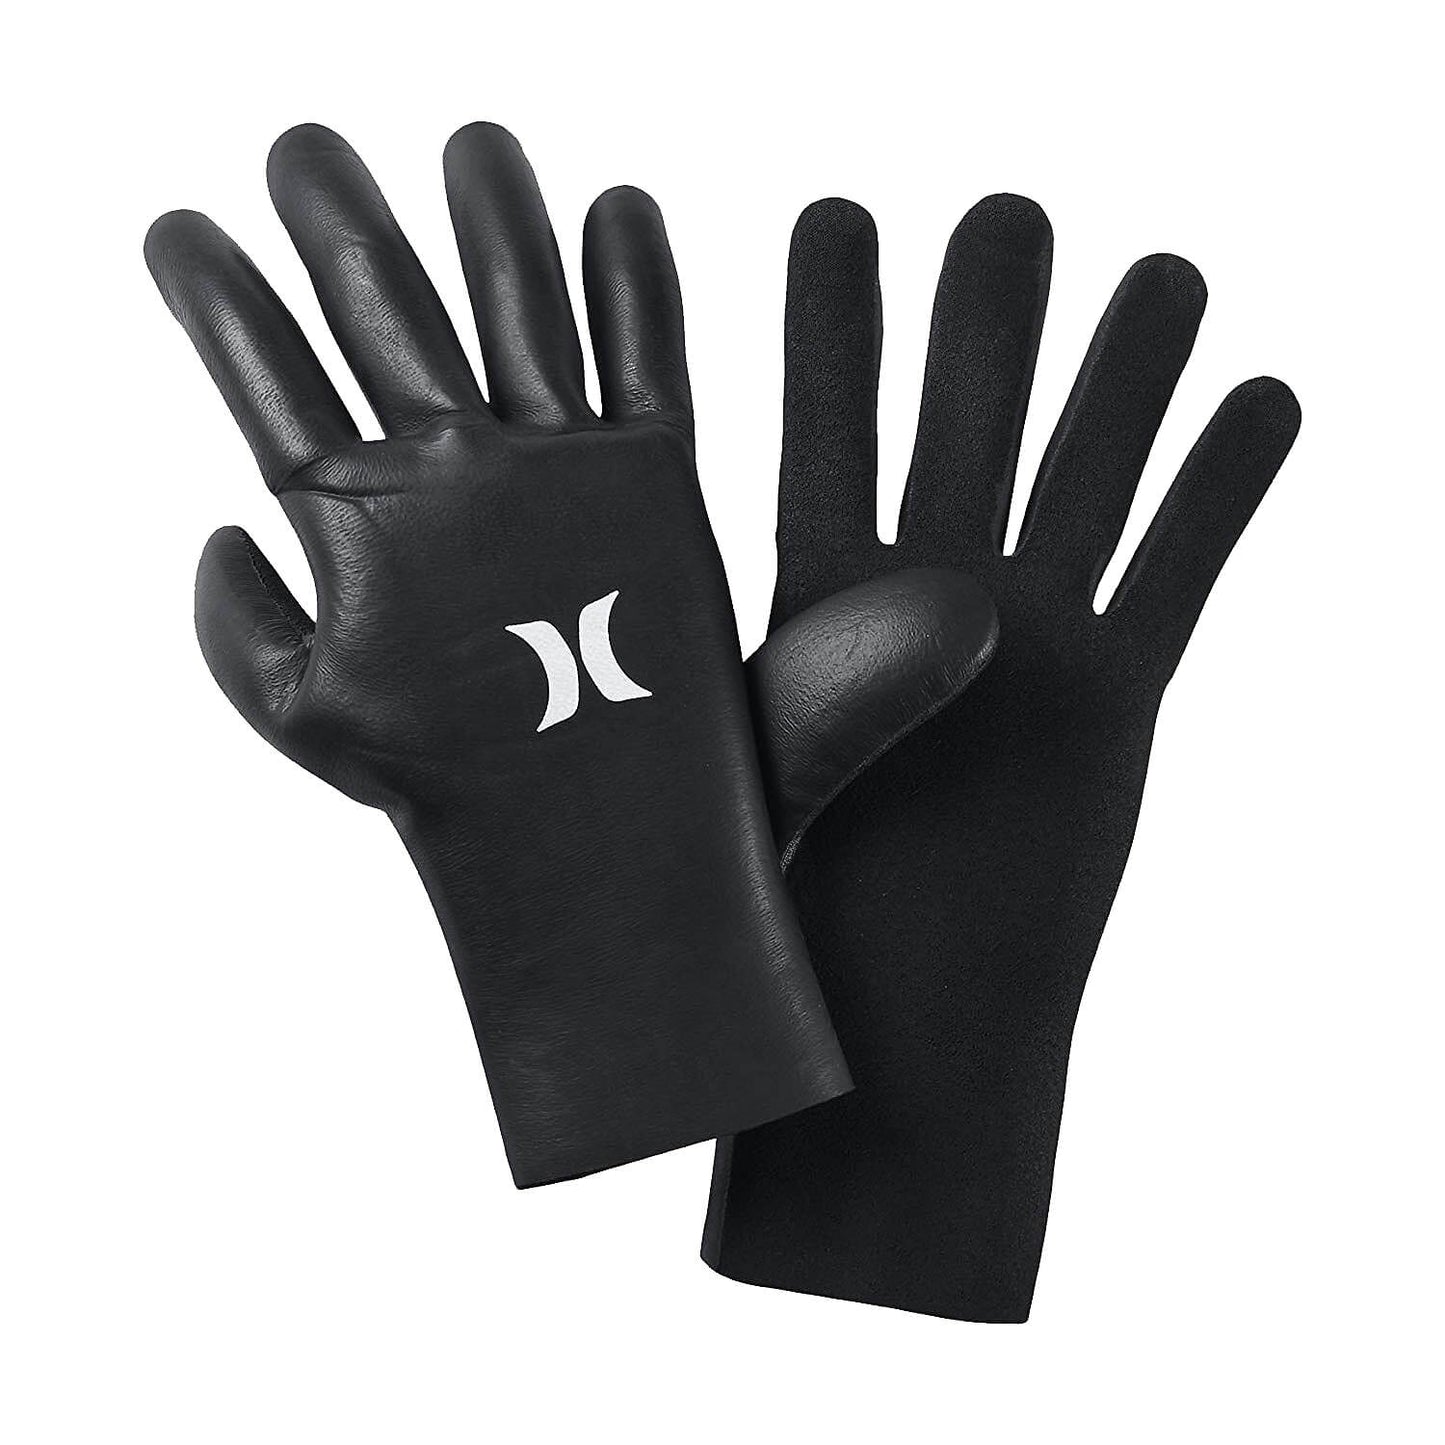 3mm Hurley ADVANTAGE PLUS Wetsuit Gloves